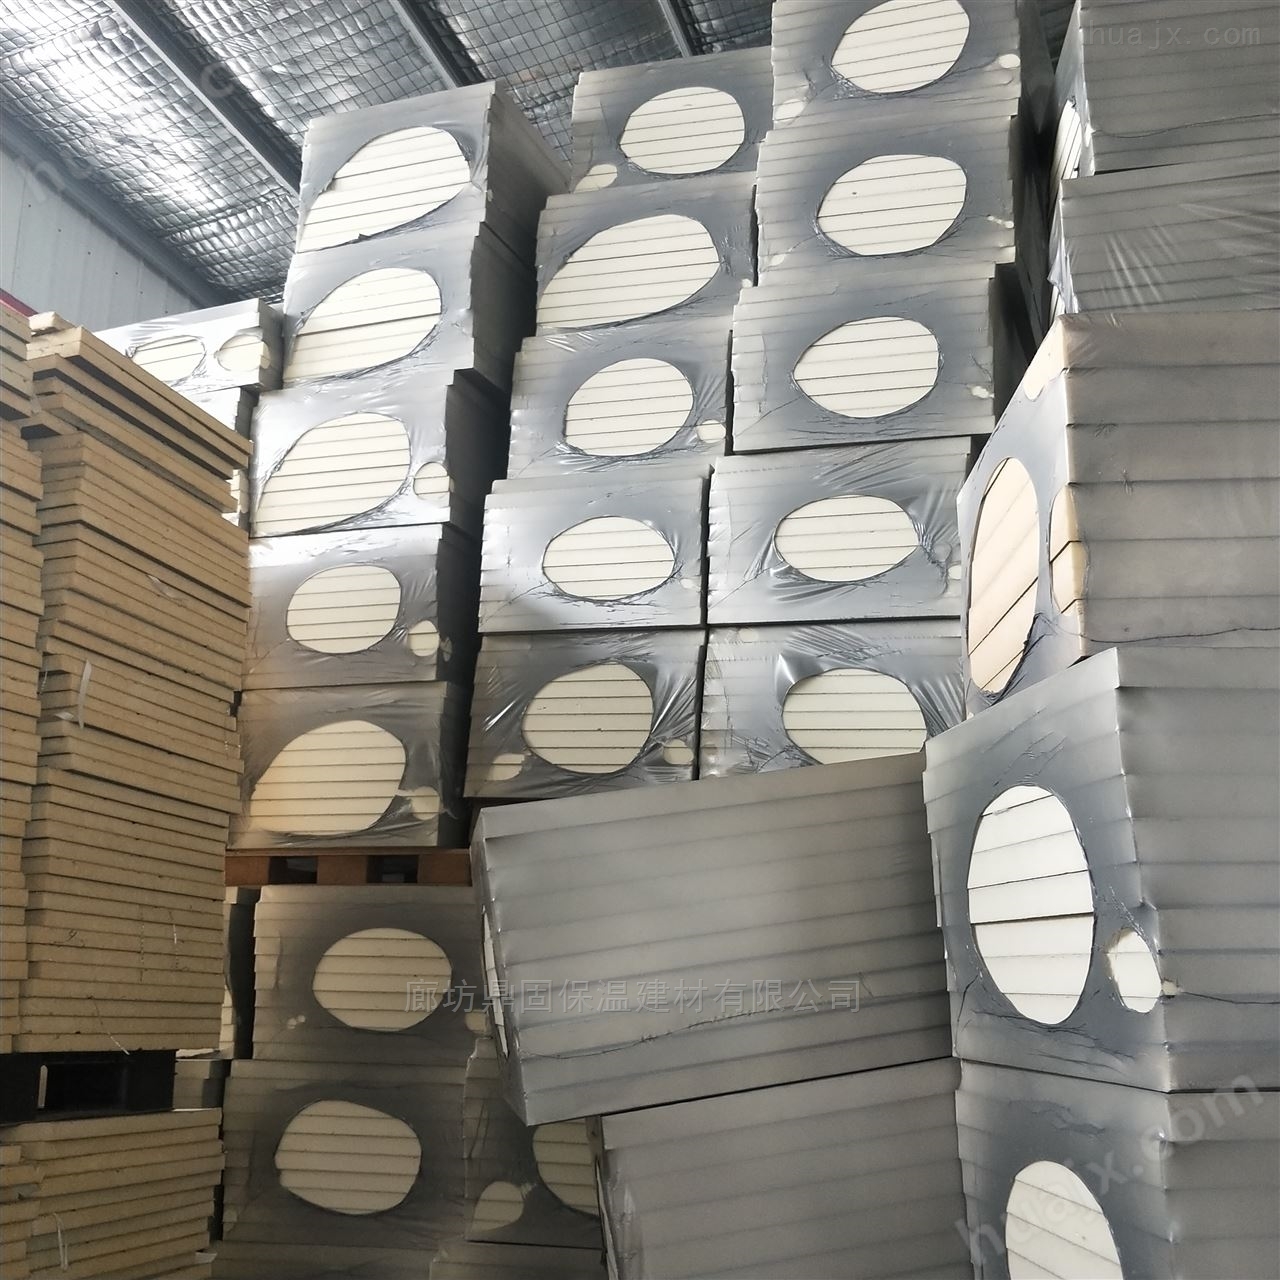 鞍山厂家聚氨酯硬质屋面保温板采购项目